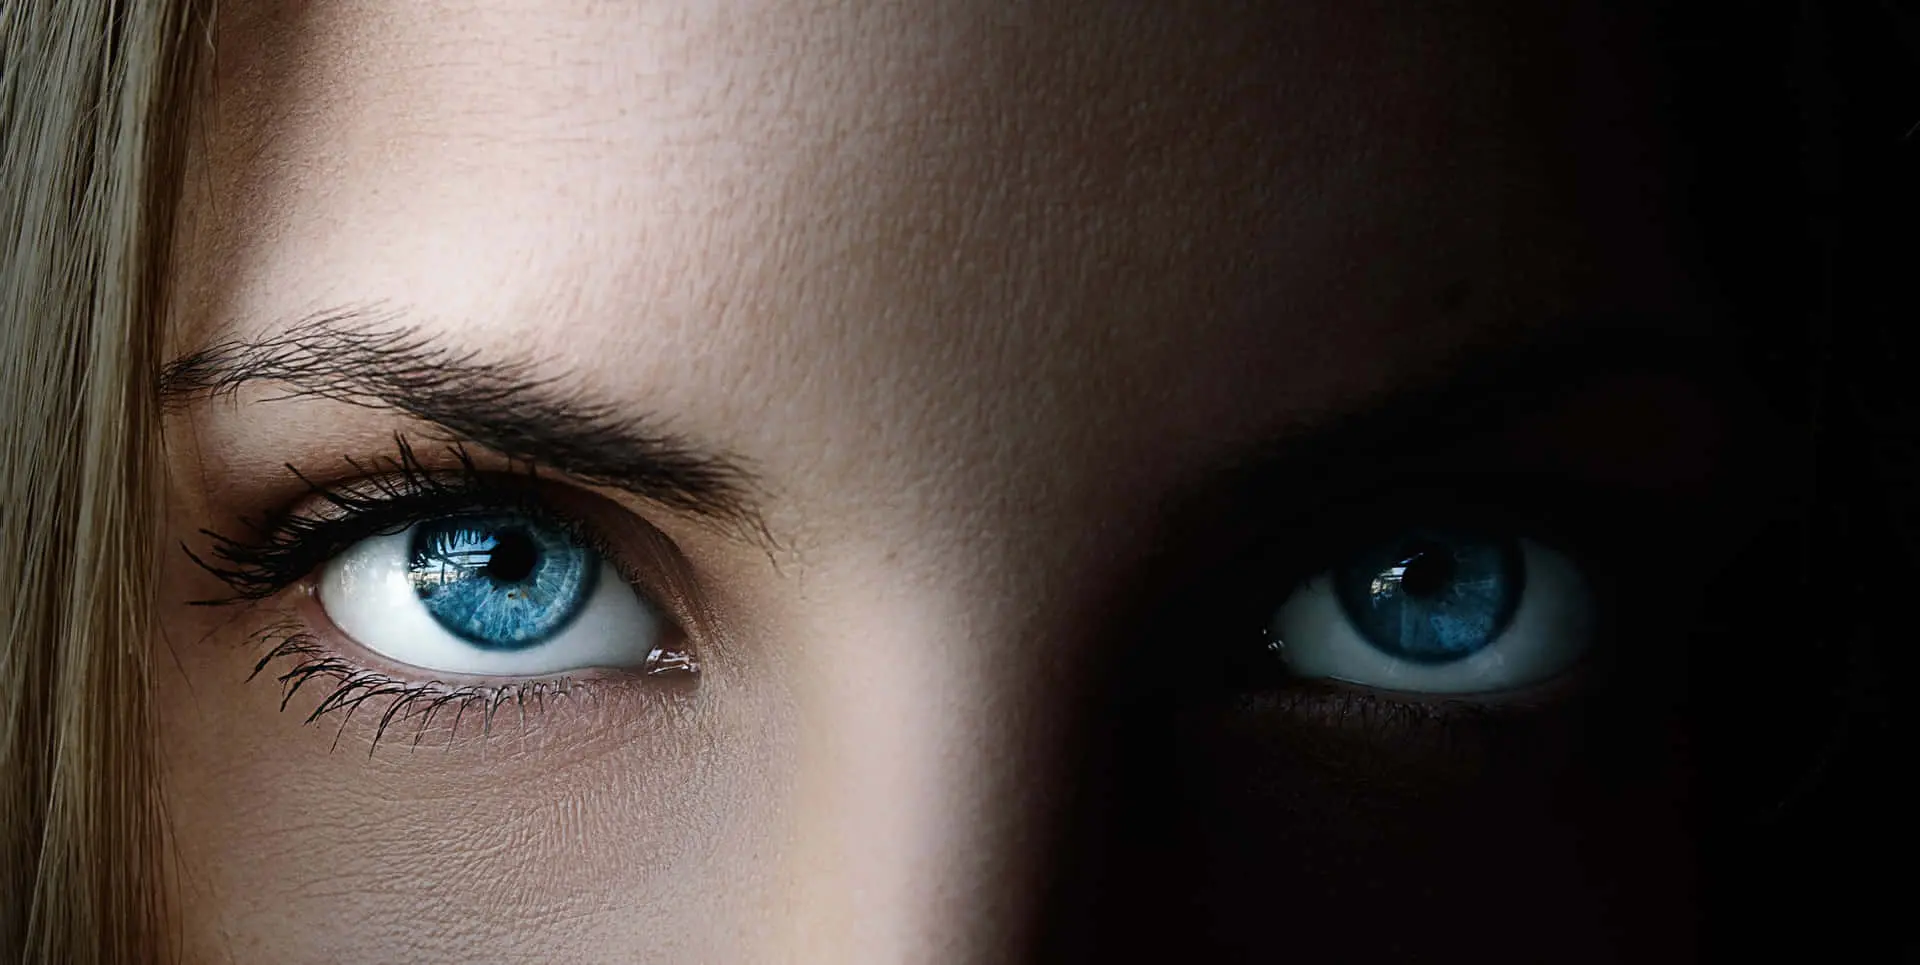 Pessoas com olhos azuis têm uma vantagem surpreendente